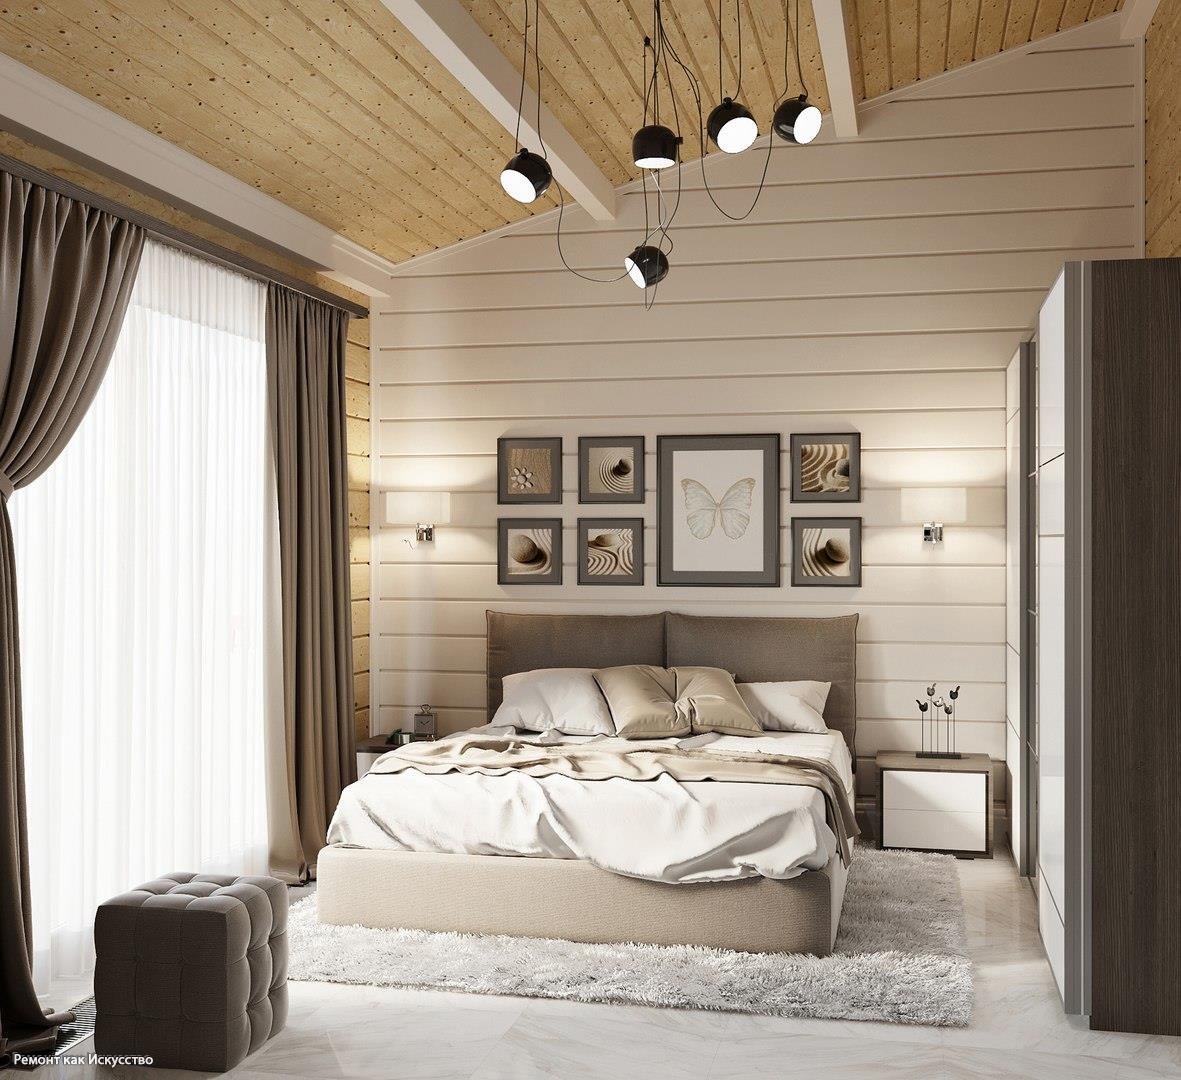 Дизайн спальни в частном доме: обзор красивых вариантов